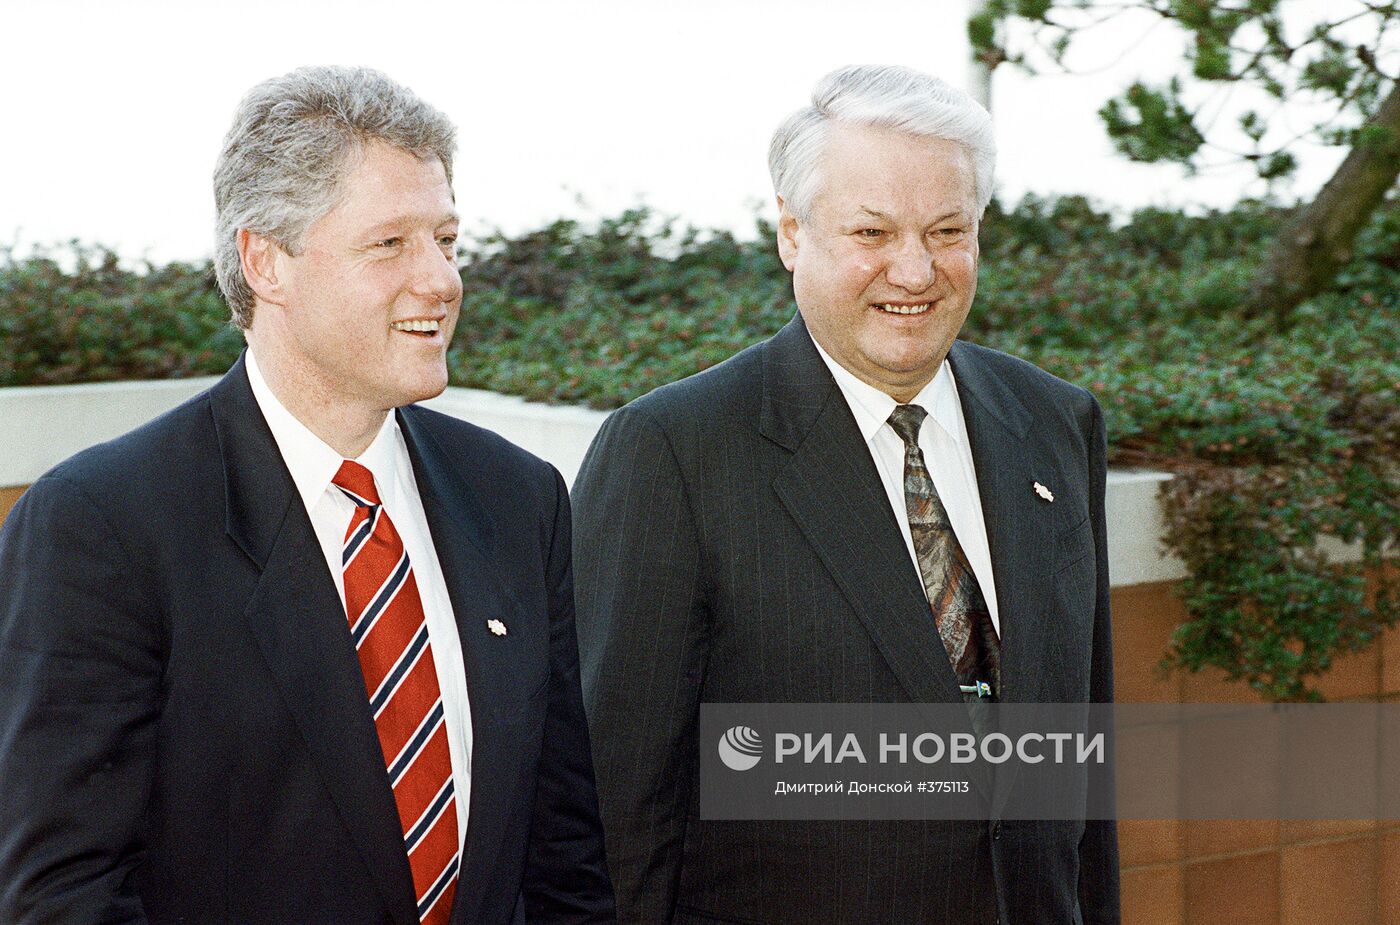 Б.Ельцин и Б.Клинтон в Ванкувере